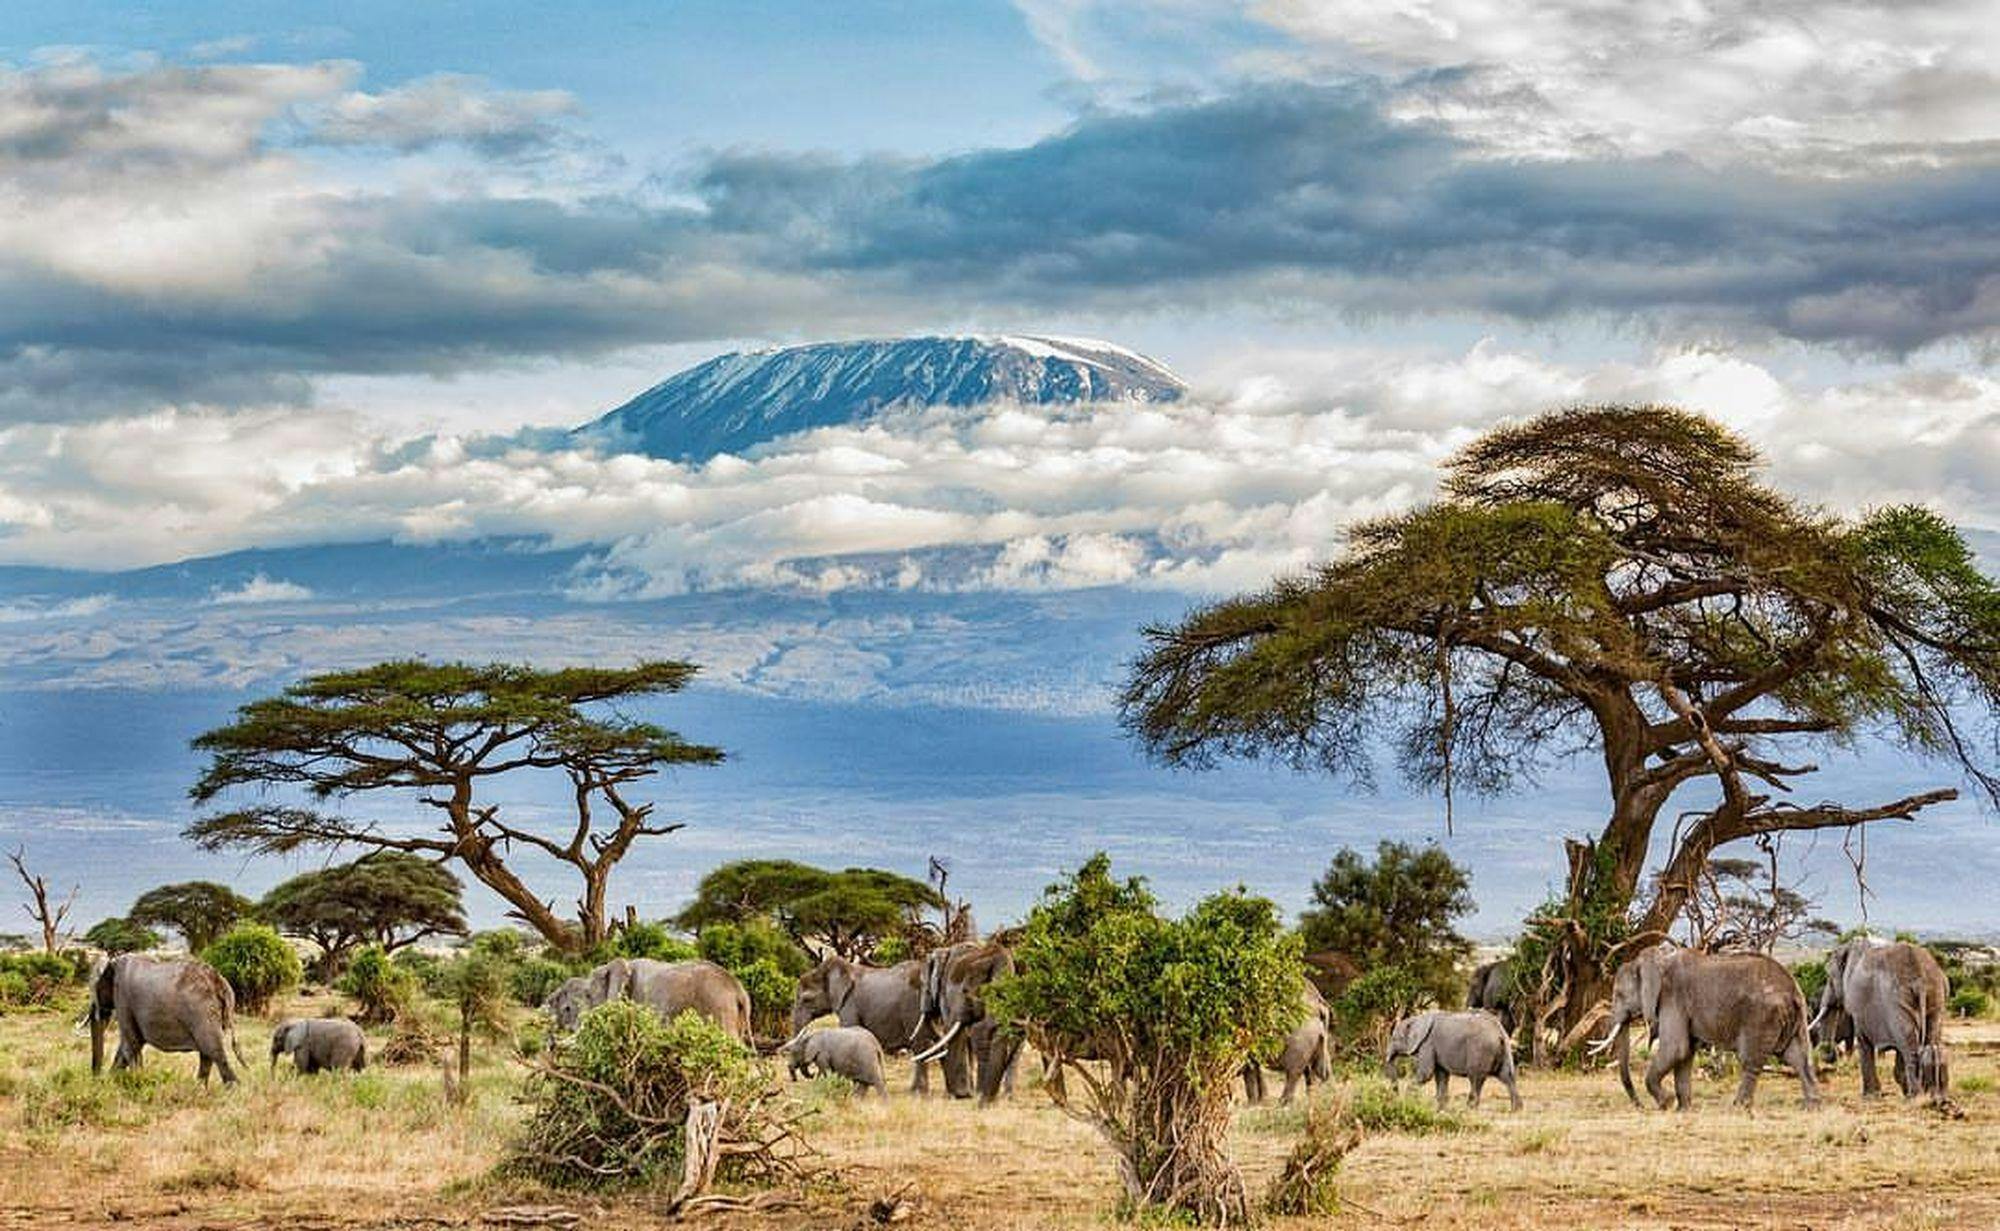 Mount Kilimanjaro - The Machame Route